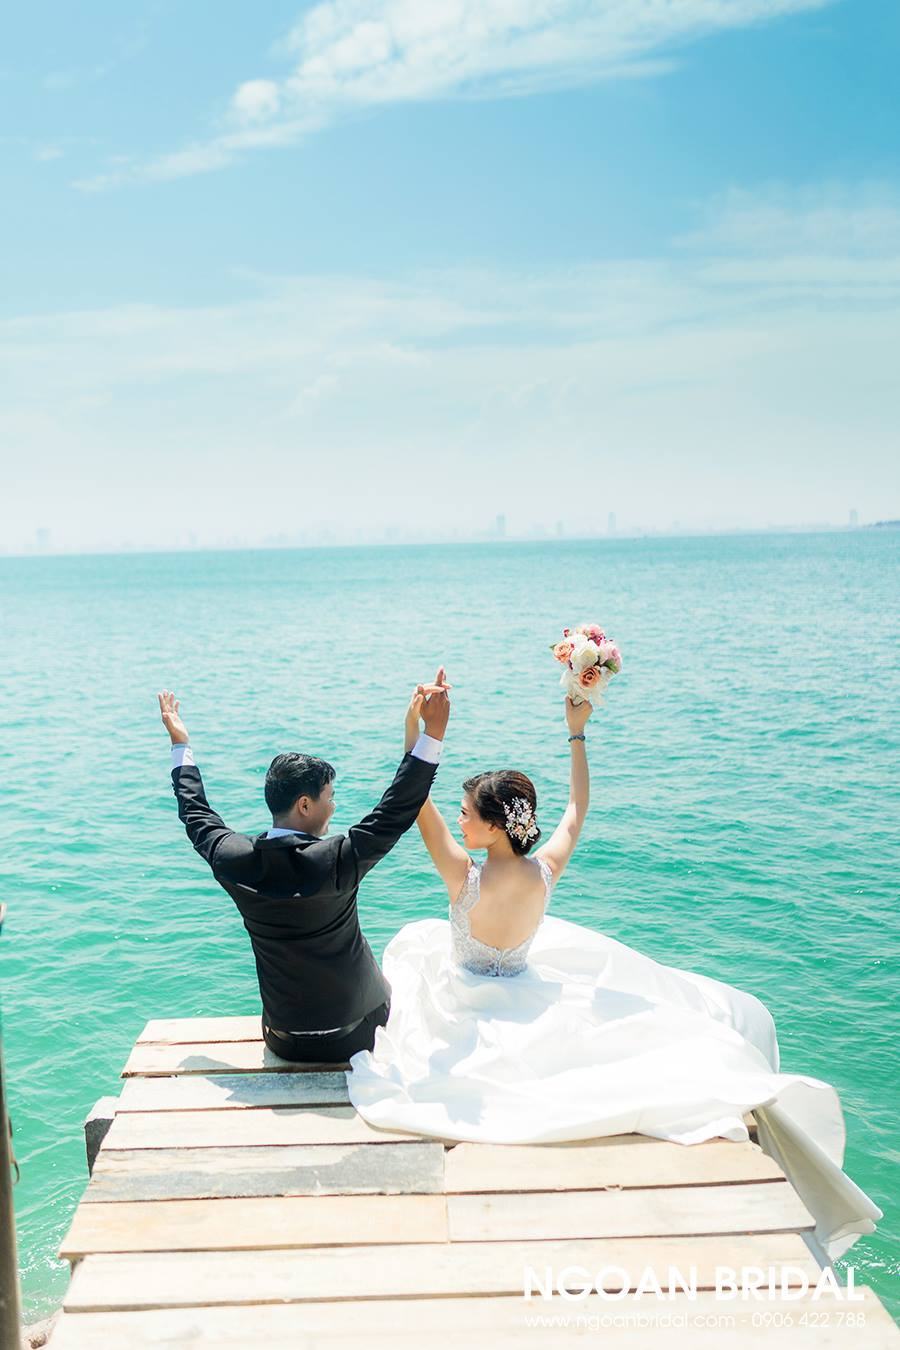 Studio chụp ảnh cưới tại Đà Nẵng - Ngoan Bridal